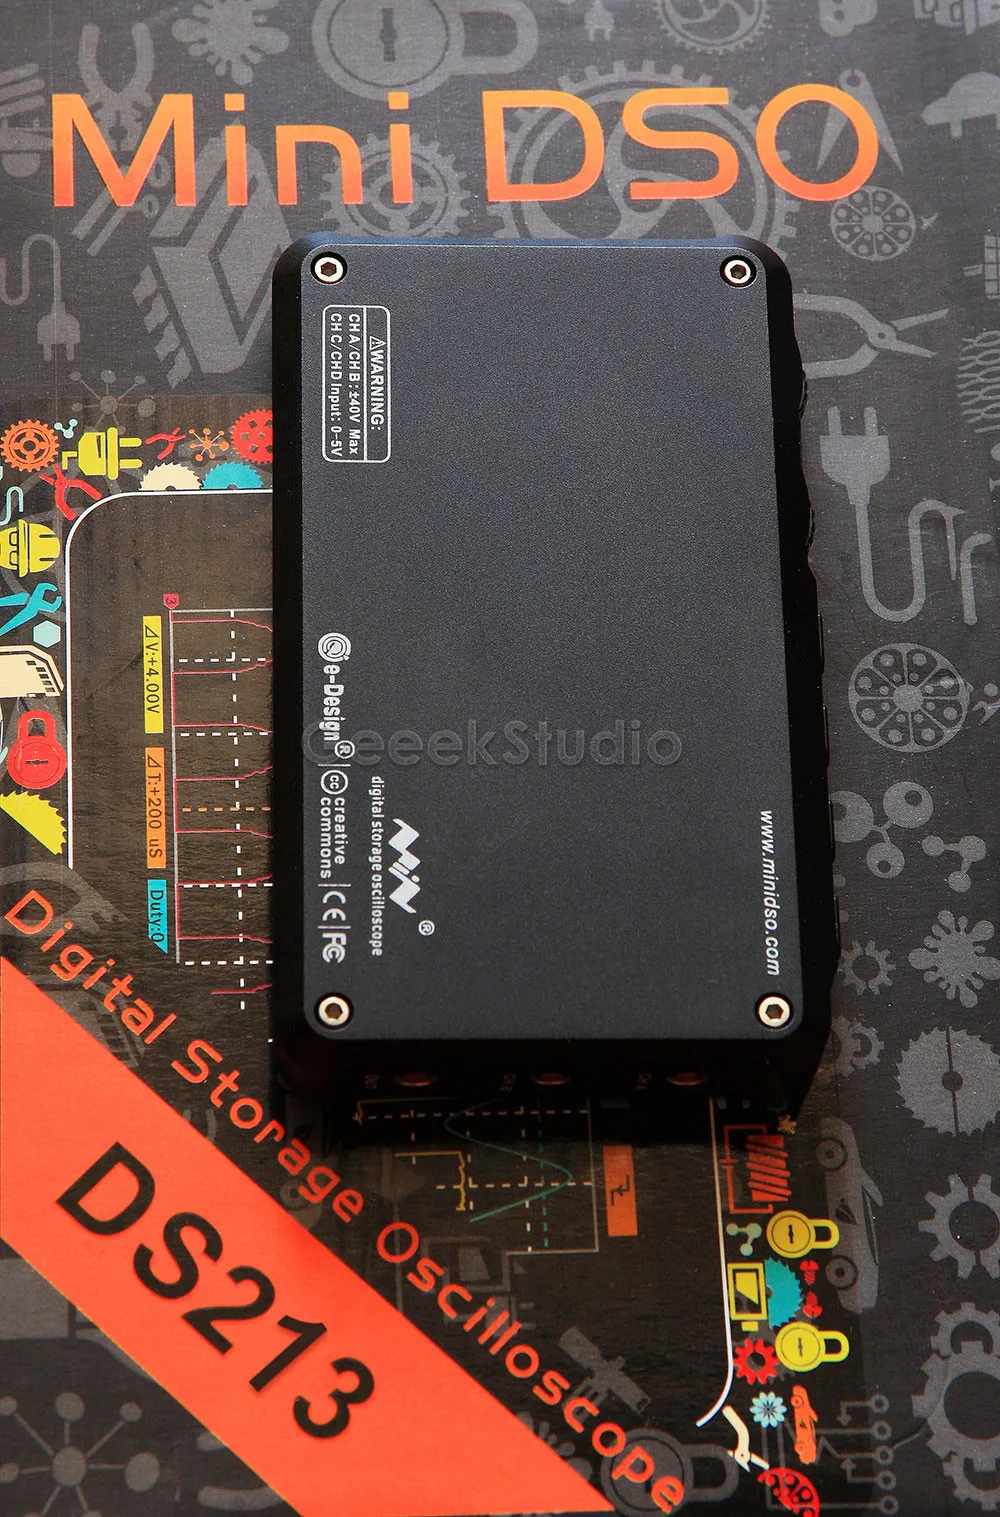 Мини DSO DS213 DSO213 цифровой осциллограф Обновление от DS203 DSO203, с дополнительным силиконовым резиновым защитным чехлом